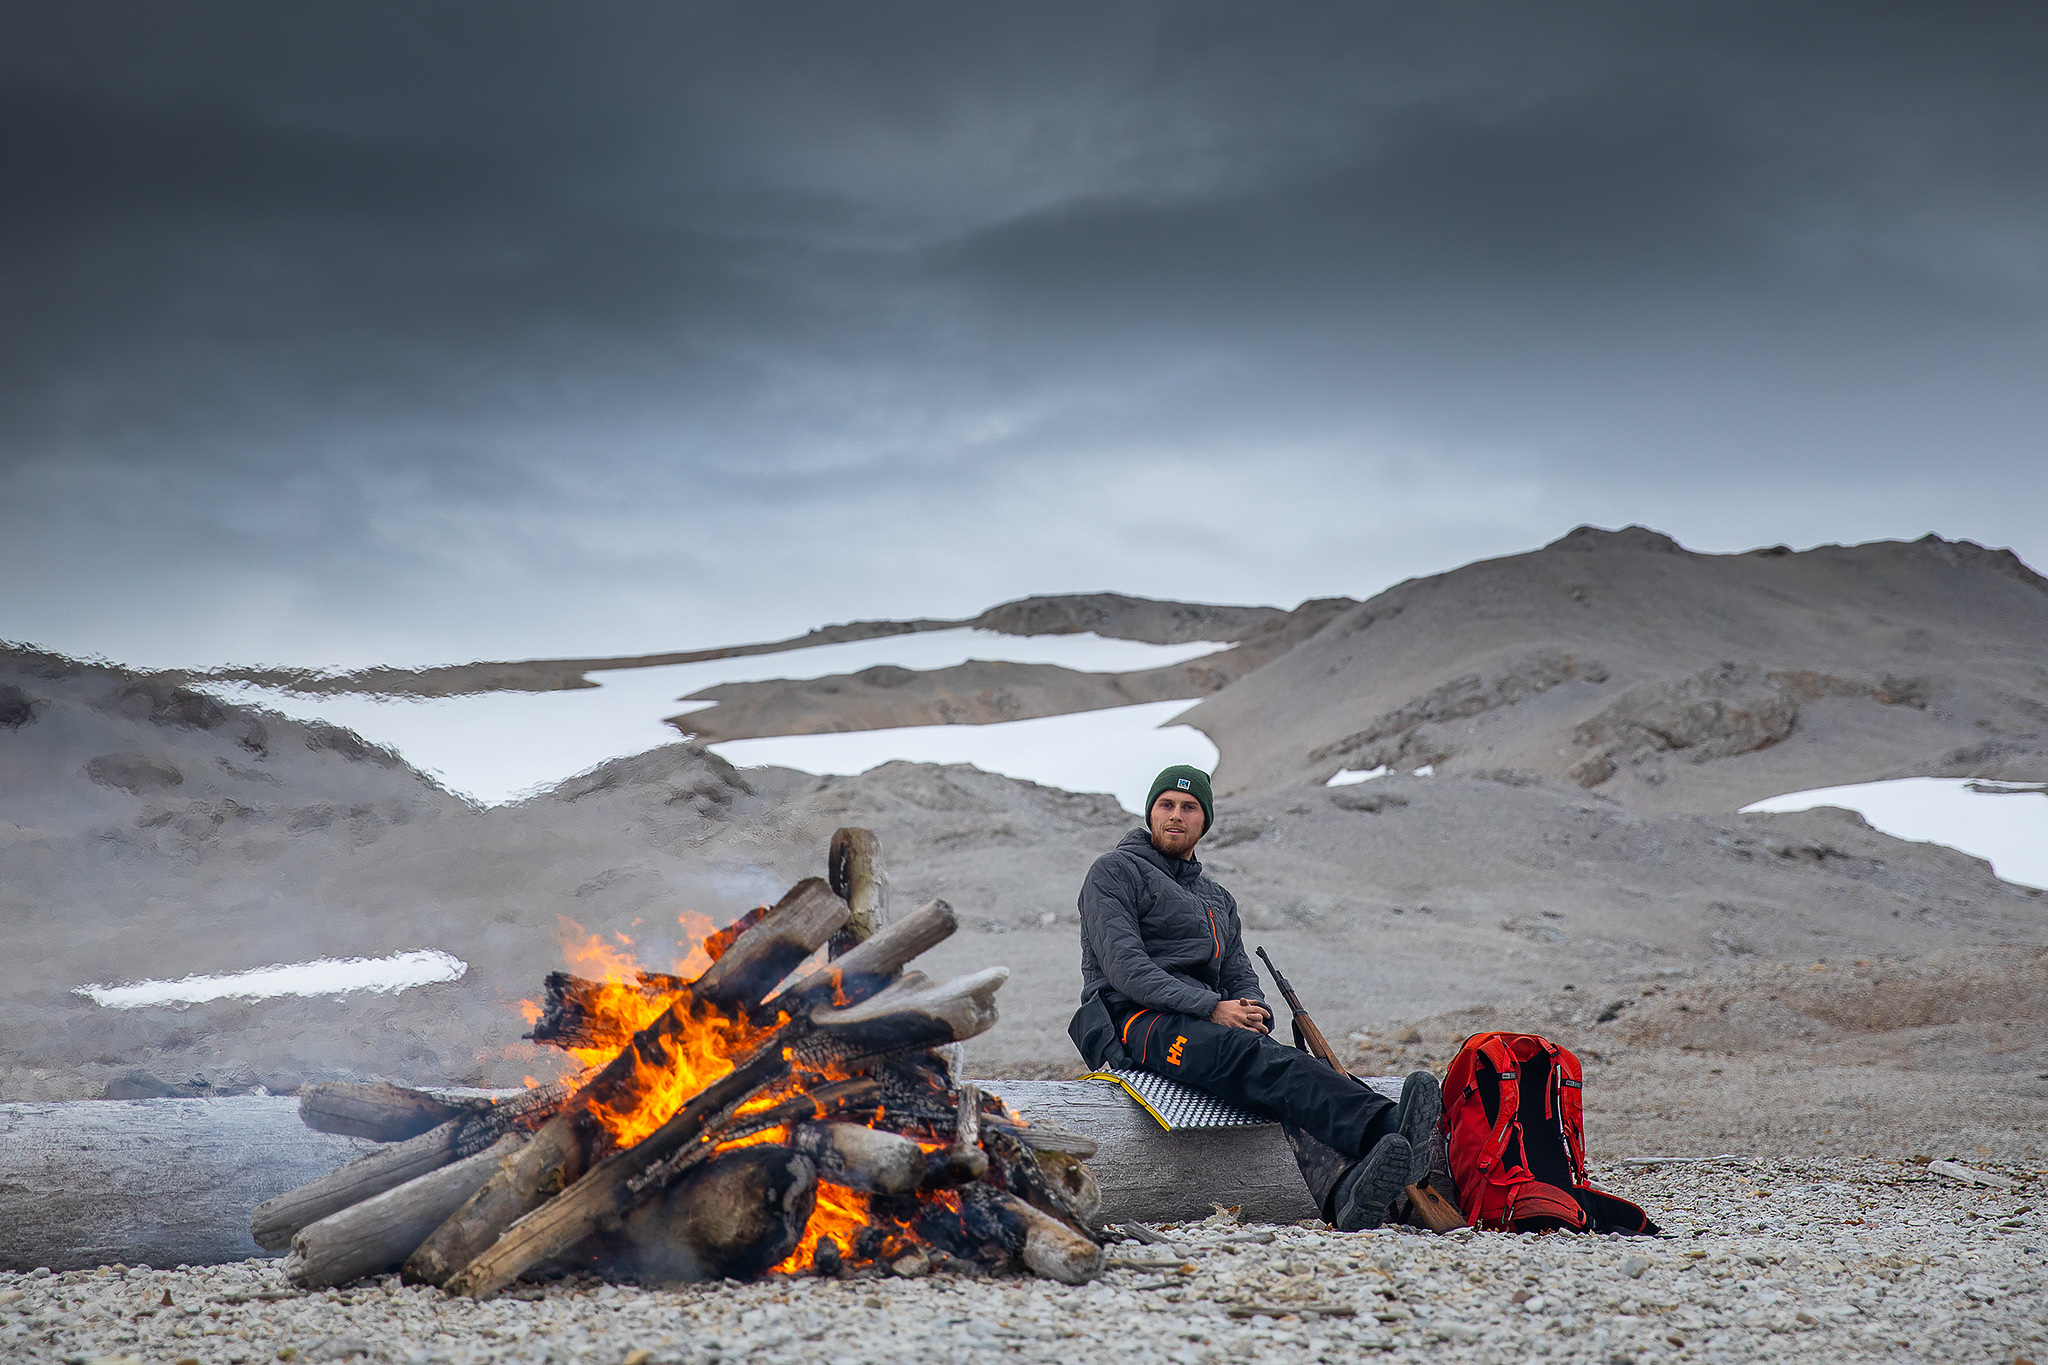 Bilde av Mats Grimsæth, vi ser hele han sitte ved et bål og i bakgrunn ser vi fjell med områder med snø.